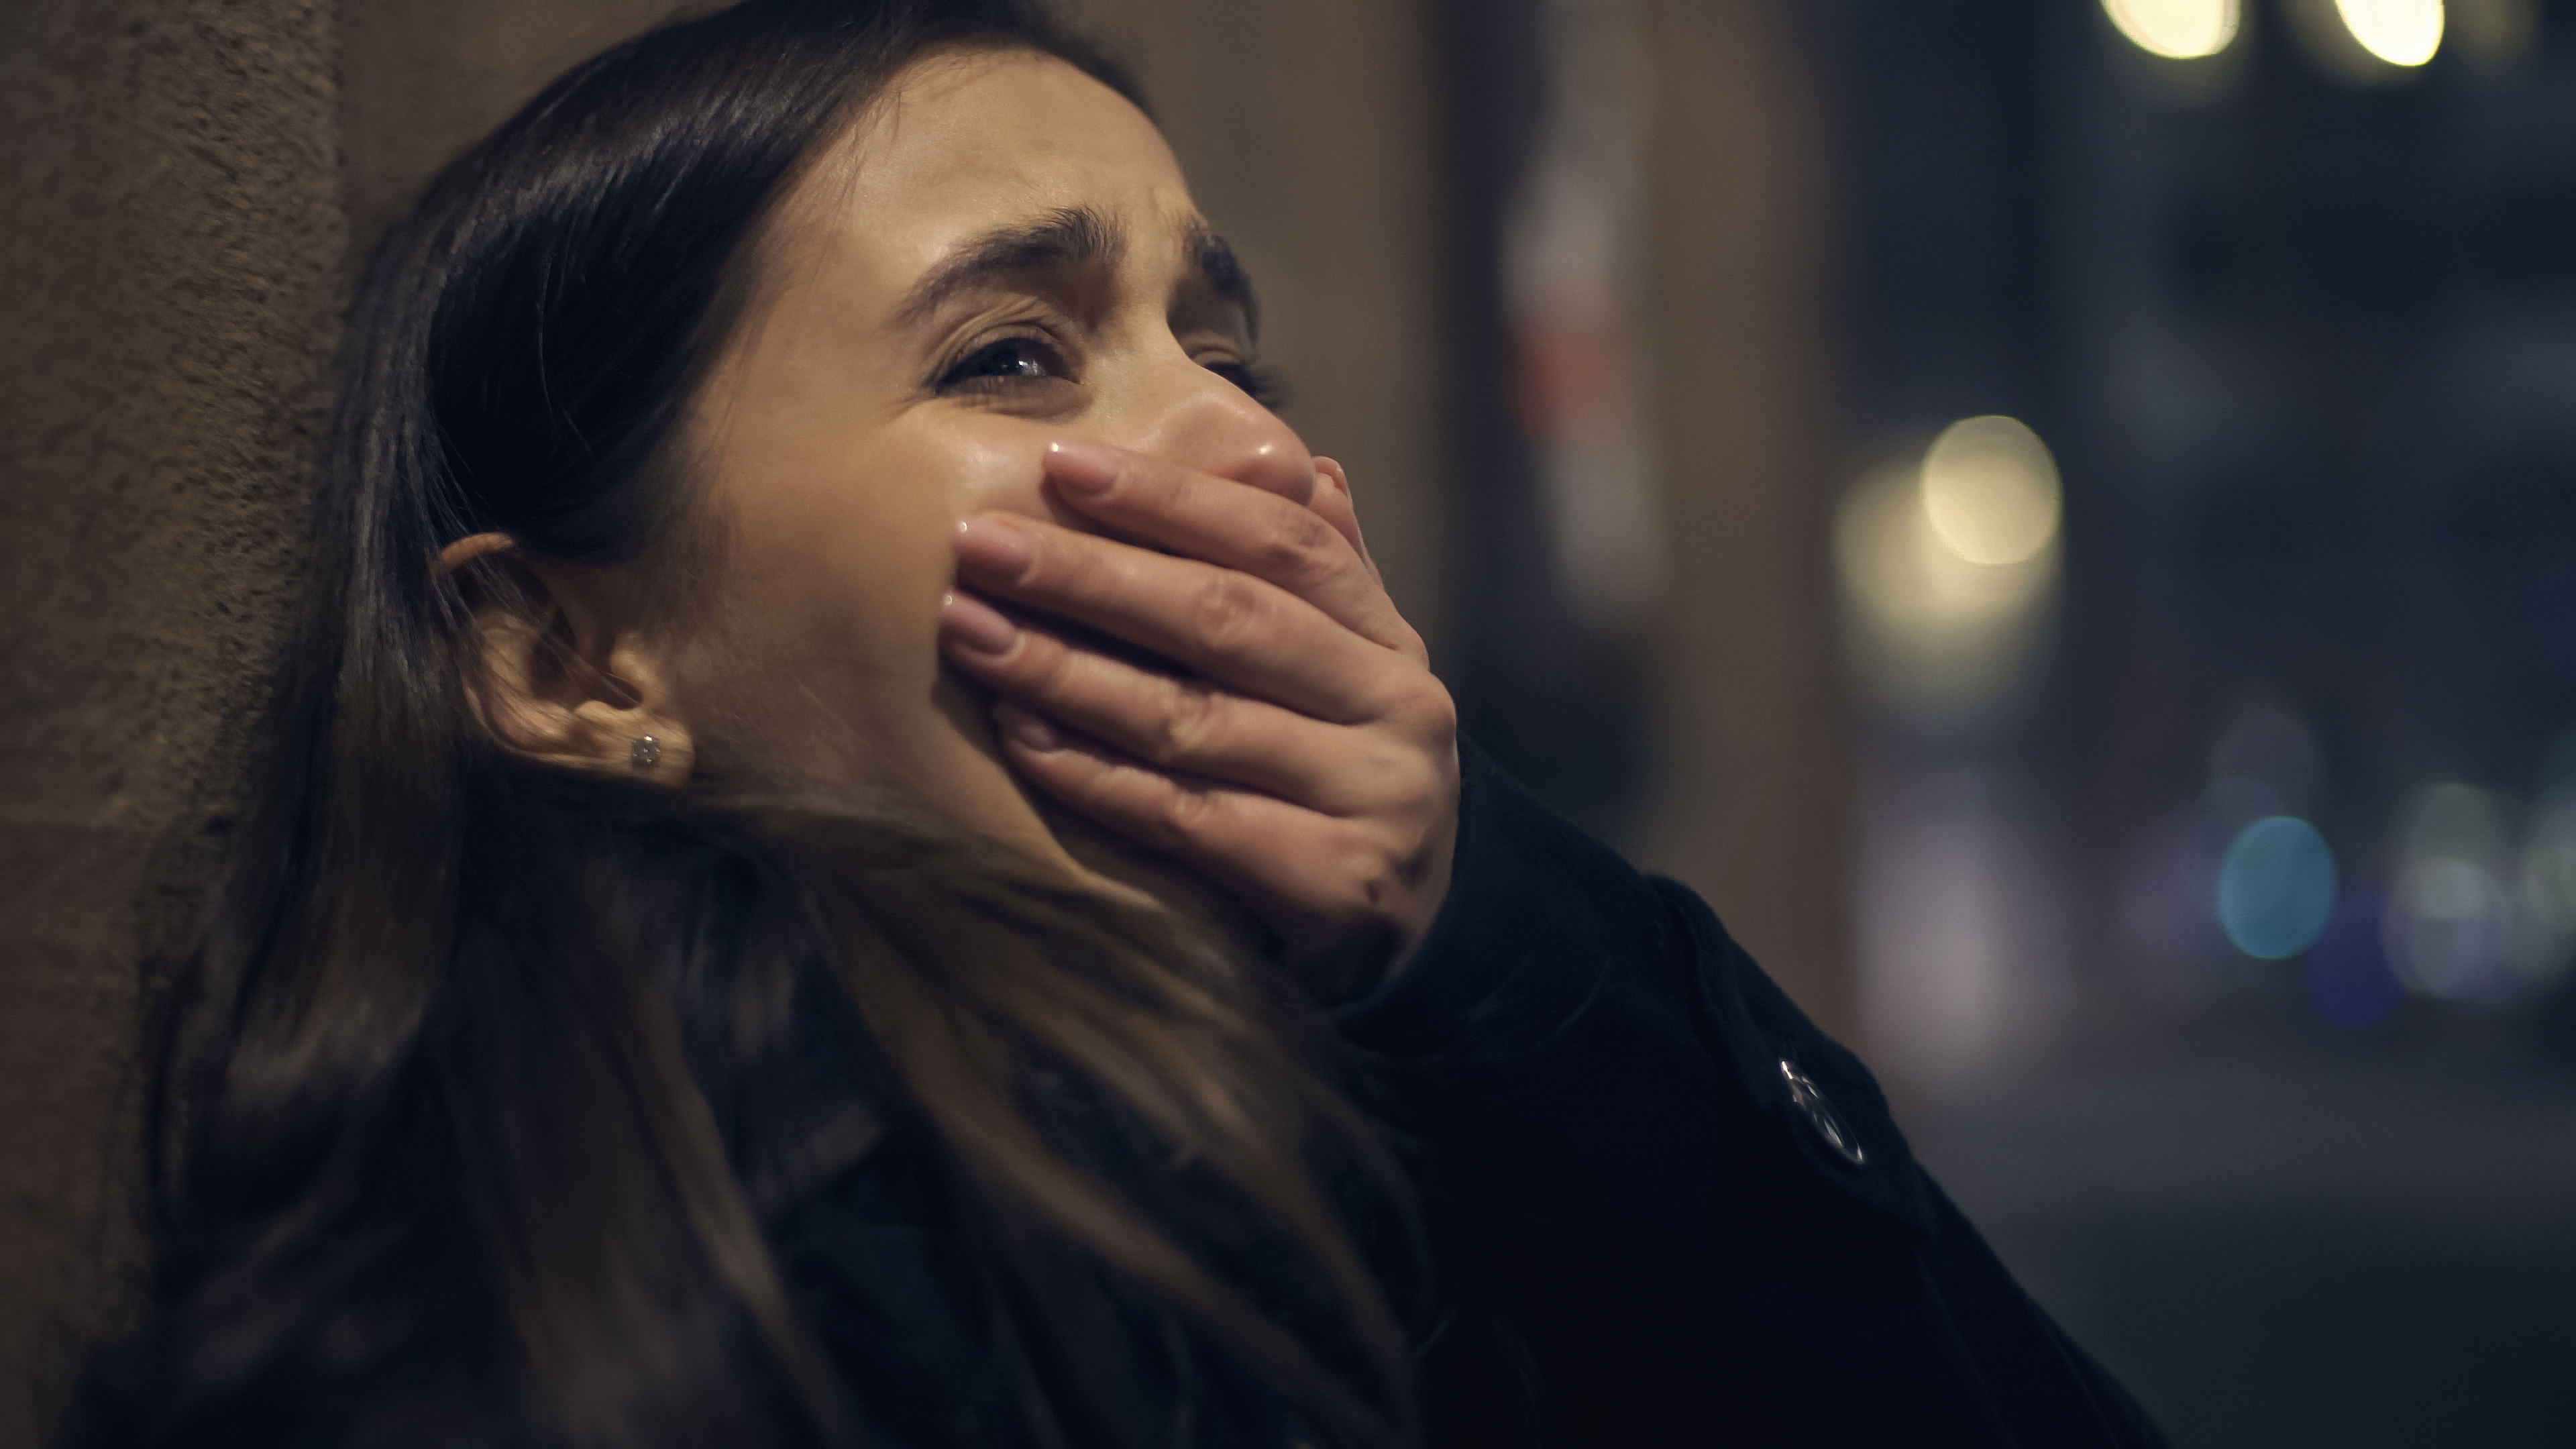 Une femme effrayée qui pleure avec sa main serrée sur sa bouche | Source : Shutterstock